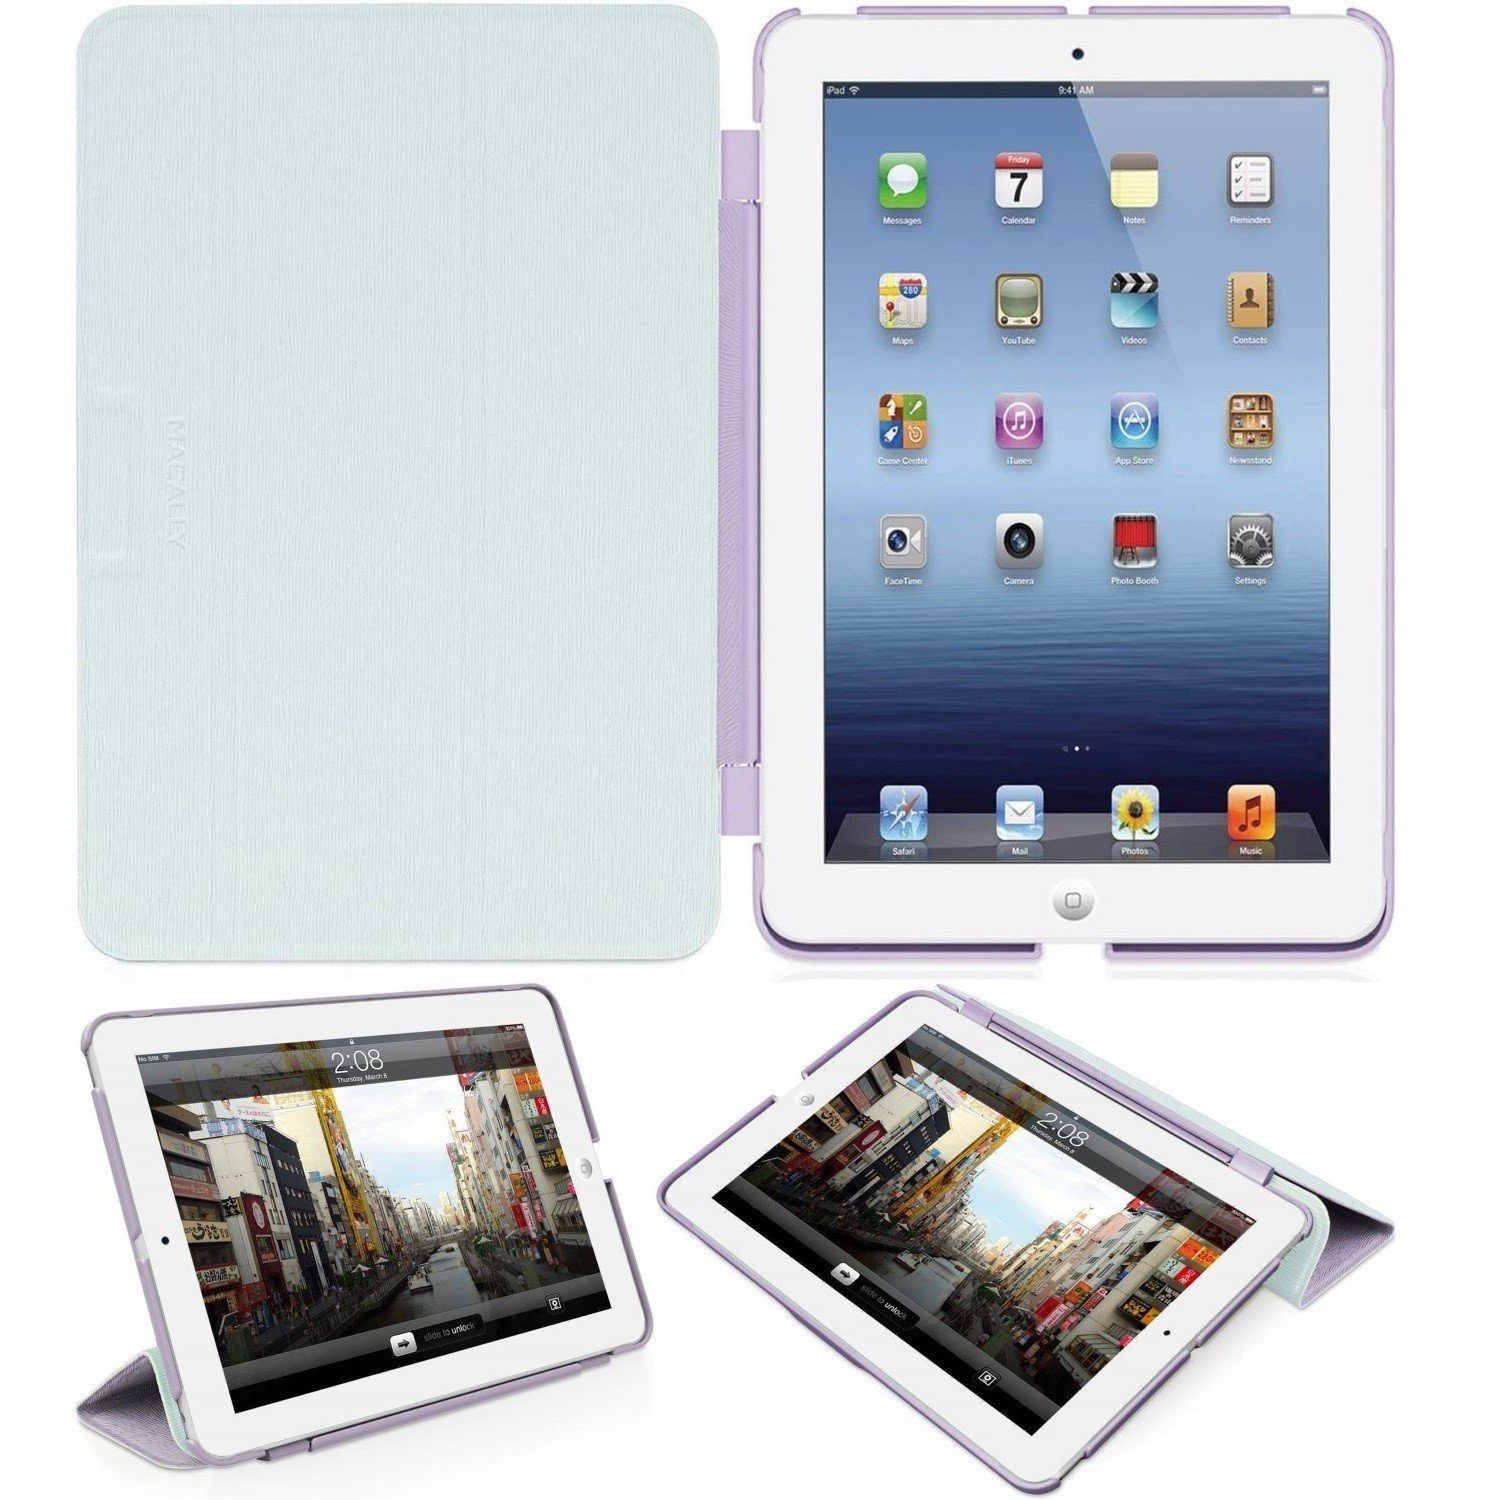 Macally Tablet-Hülle Klapp-Tasche Cover Ständer Schutz-Hülle Lila, Smart  Folio passend für für Apple iPad mini 1 2 3 Generation, Stand-Funktion,  Magnet-Verschluss, leicht und flach, Ein-/Aus-Funktion